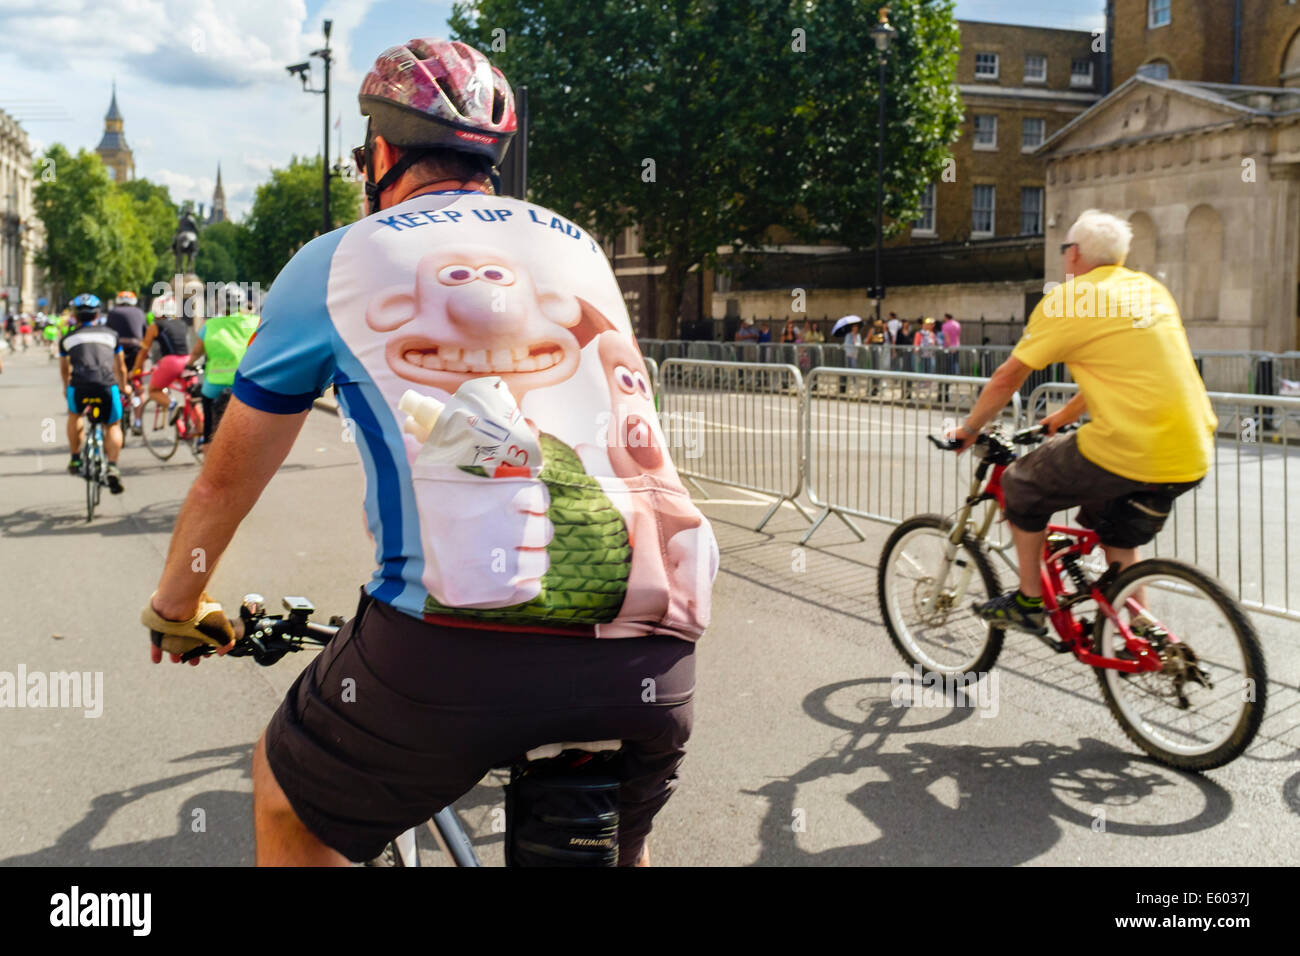 Teilnehmer an der aufsichtsrechtlichen RideLondon Freecycle-Veranstaltung im Zentrum von London Stockfoto